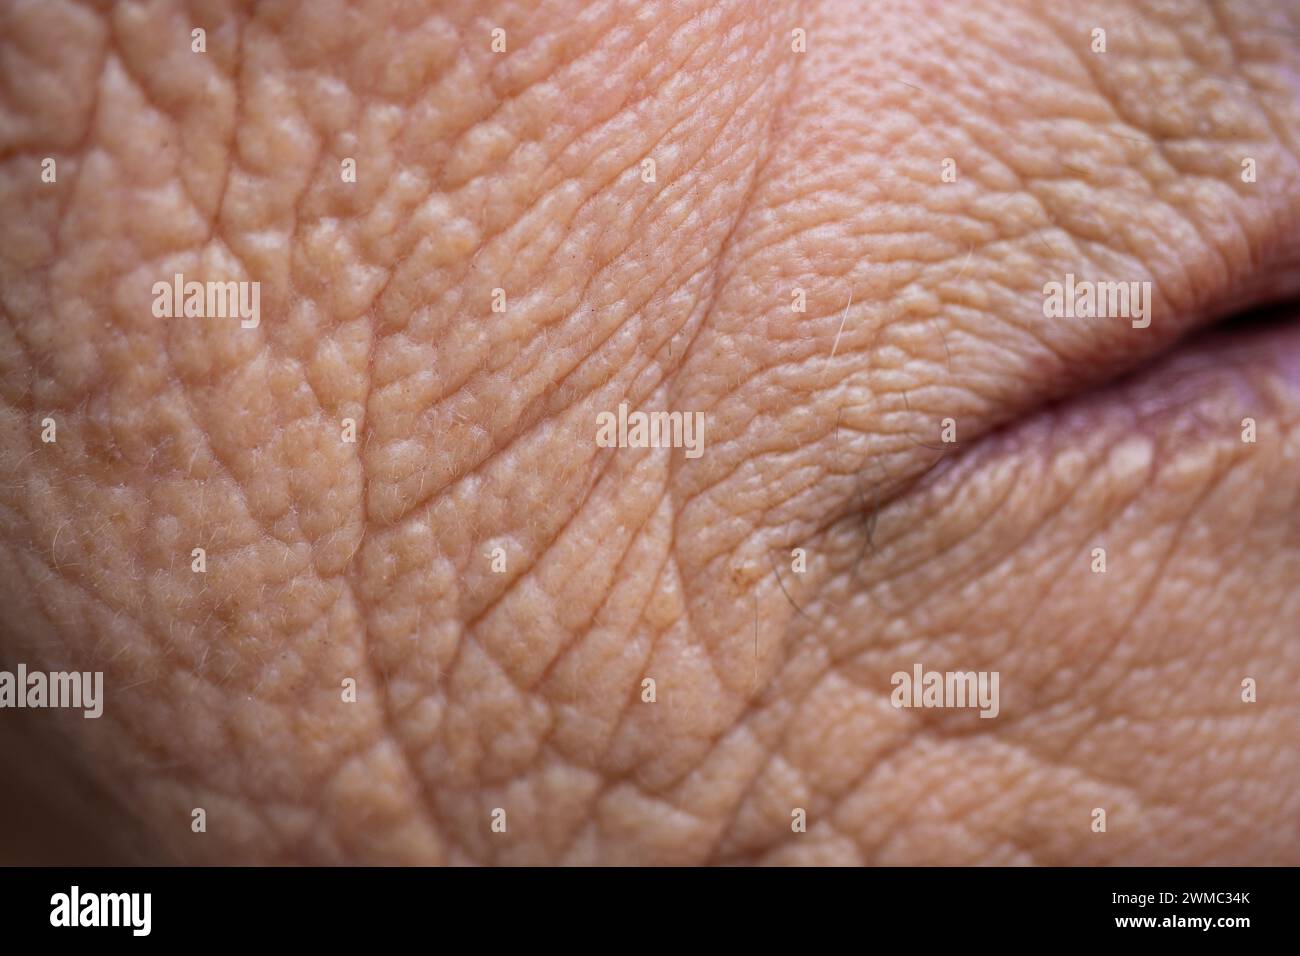 Makrofotografie des Gesichtsausschnitts einer älteren Frau. Die Haut ist von der Zeit geprägt, voller tiefer Falten. Faltige Haut. Zeichen des Alters. Stockfoto